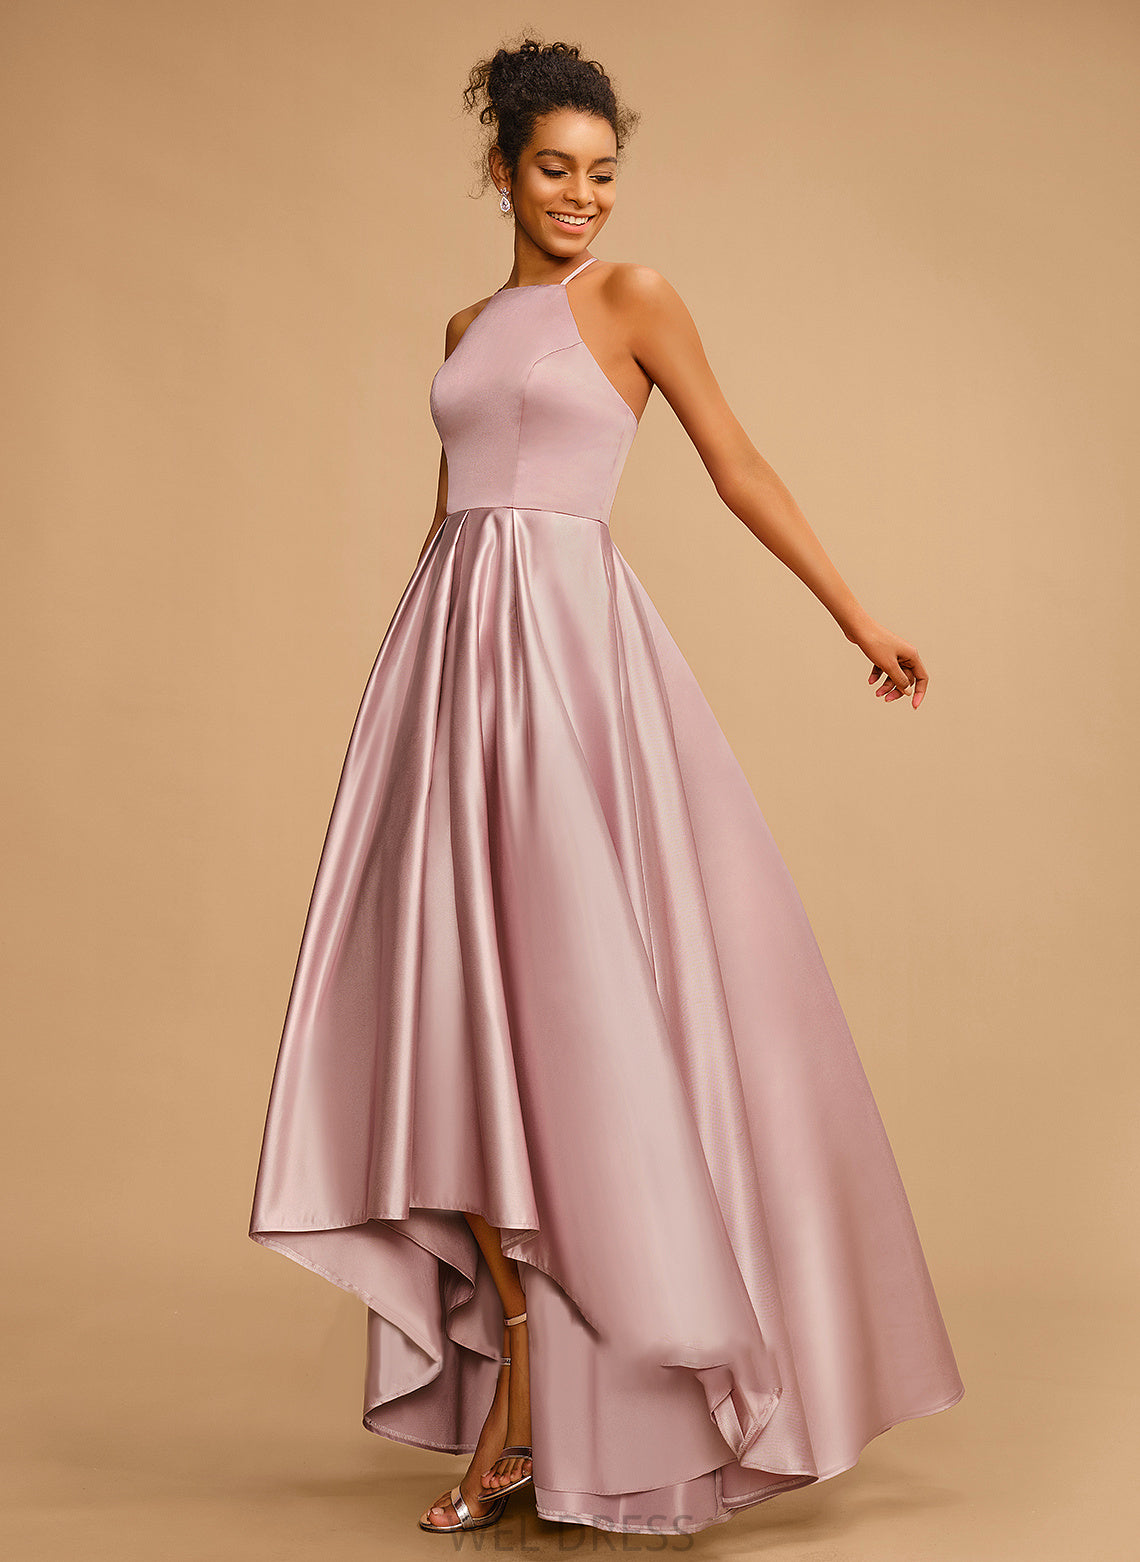 Asymmetrical A-Line Satin Kiley Prom Dresses Neckline Square